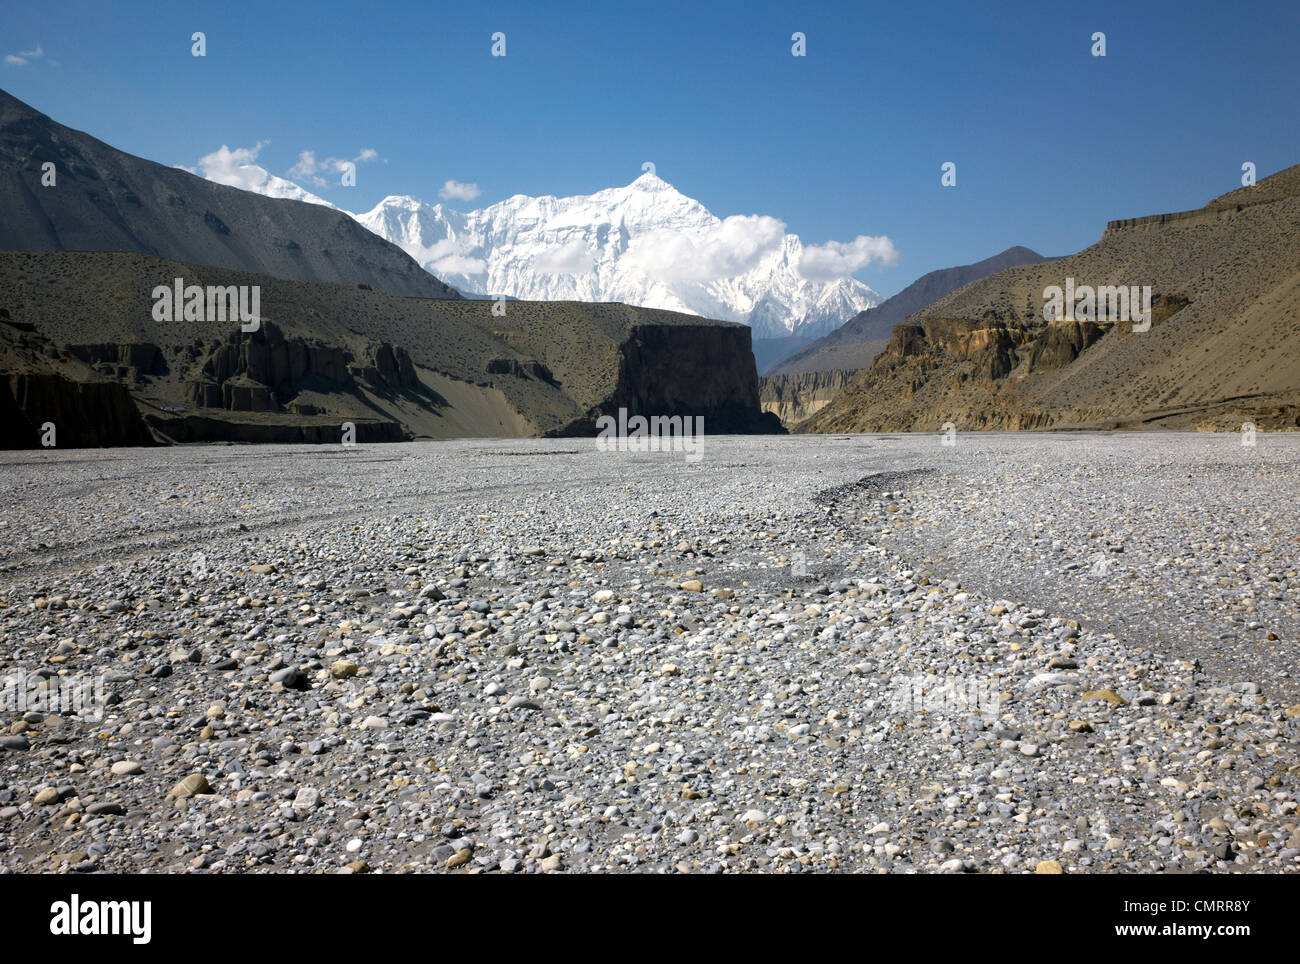 Fotografia a colori del letto del fiume Kali Gandaki e della catena montuosa dell'Himal Nilgiri, Tusang, Himalaya, Nepal, Asia Foto Stock